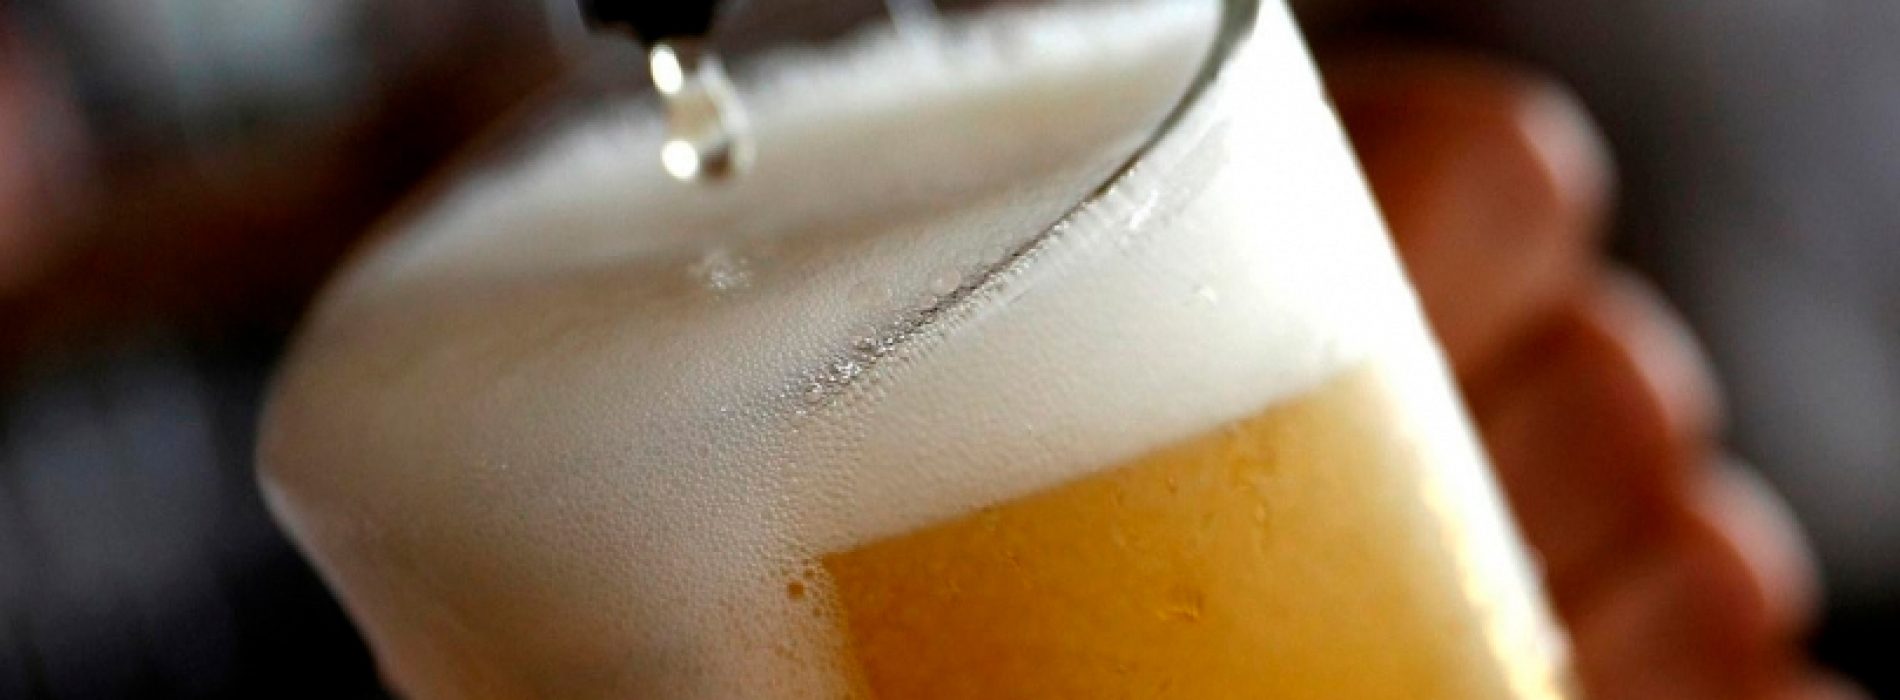 Investigación de la diversidad de levaduras de Chile busca desarrollar cerveza 100% nacional